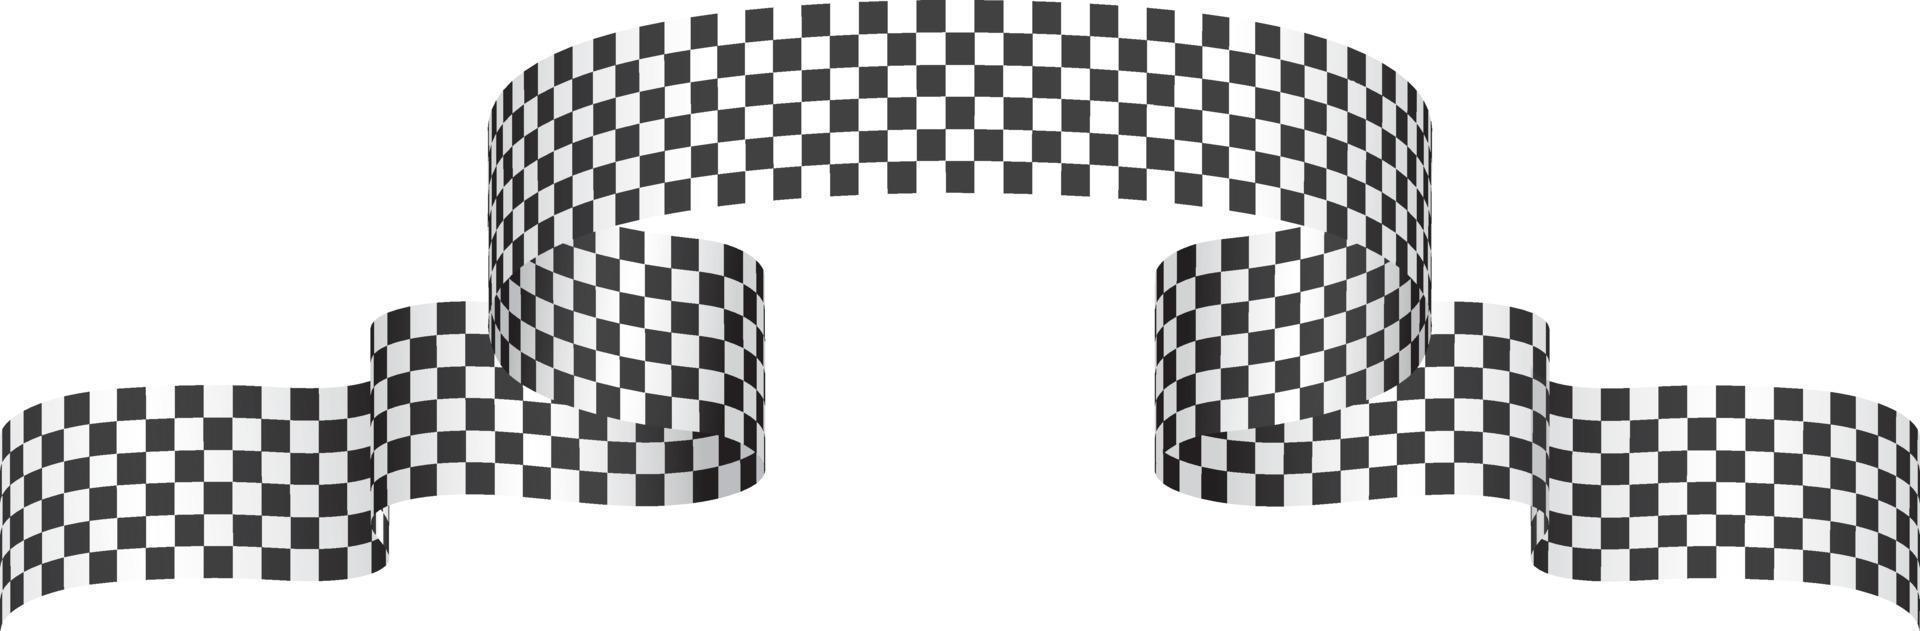 tävlings flagga band, symbol märkning Start och slutet. för tävlings baner dekoration. vektor illustration